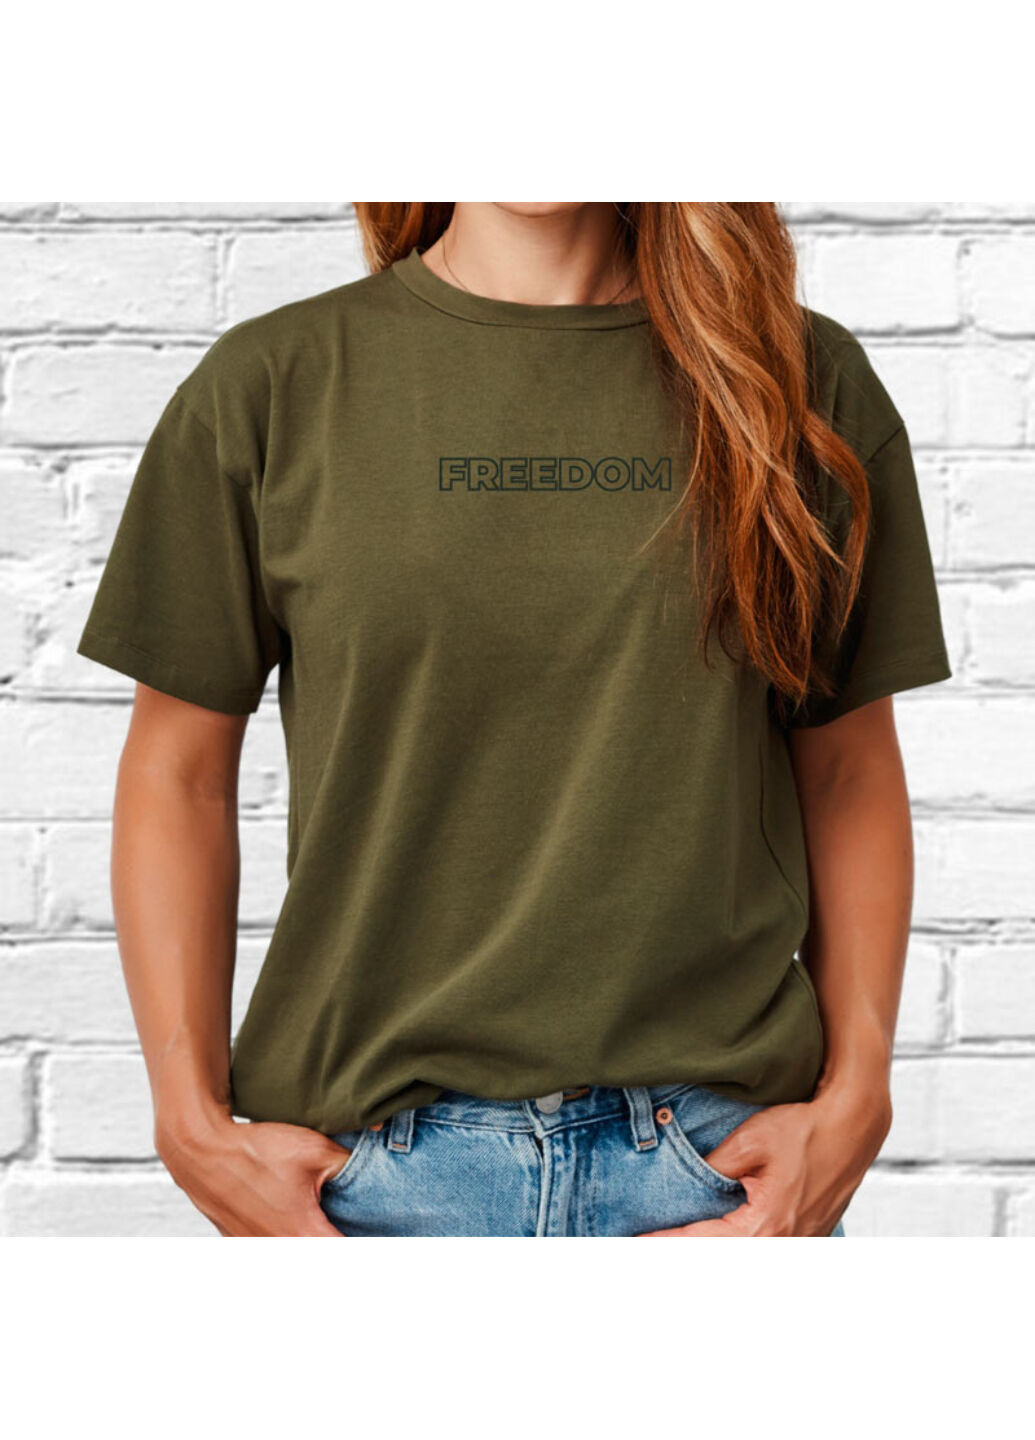 Хакі (оливкова) футболка з вишивкою freedom жіноча millytary green m No Brand